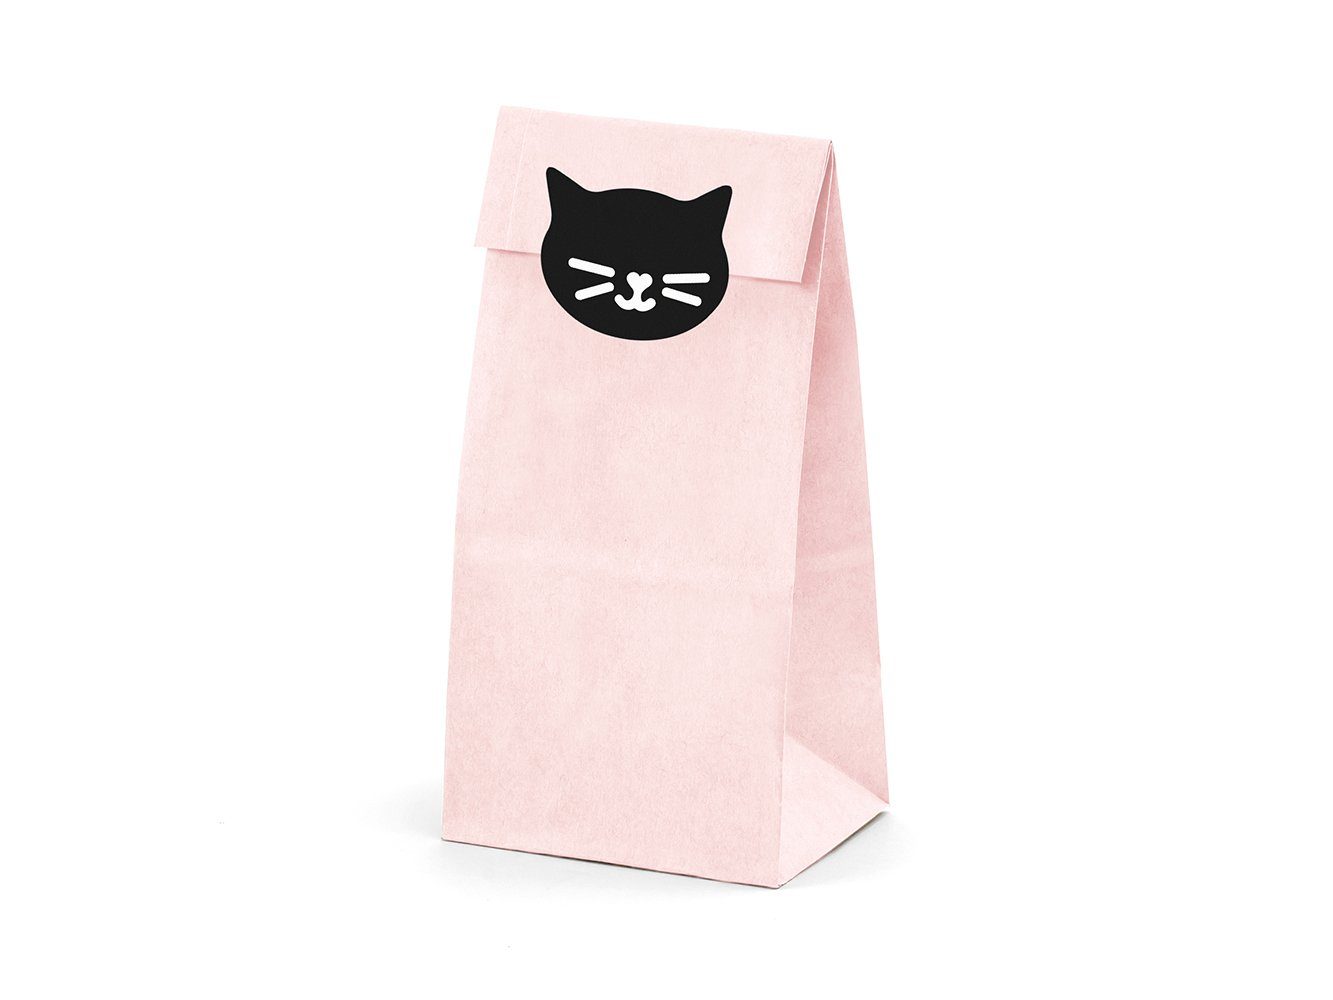 schwarz 6er Set partydeco Papierdekoration, Katzen Papiertüten rosa mit Aufklebern